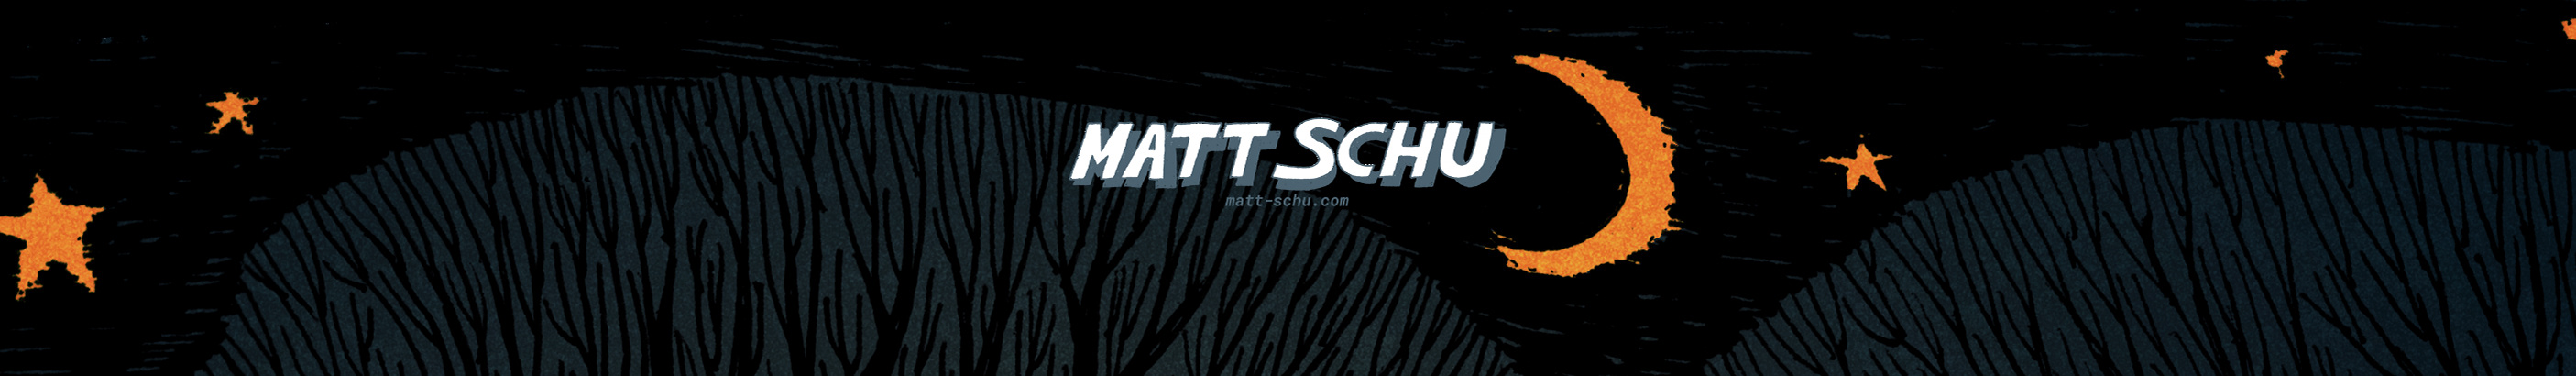 MATT SCHU's profile banner